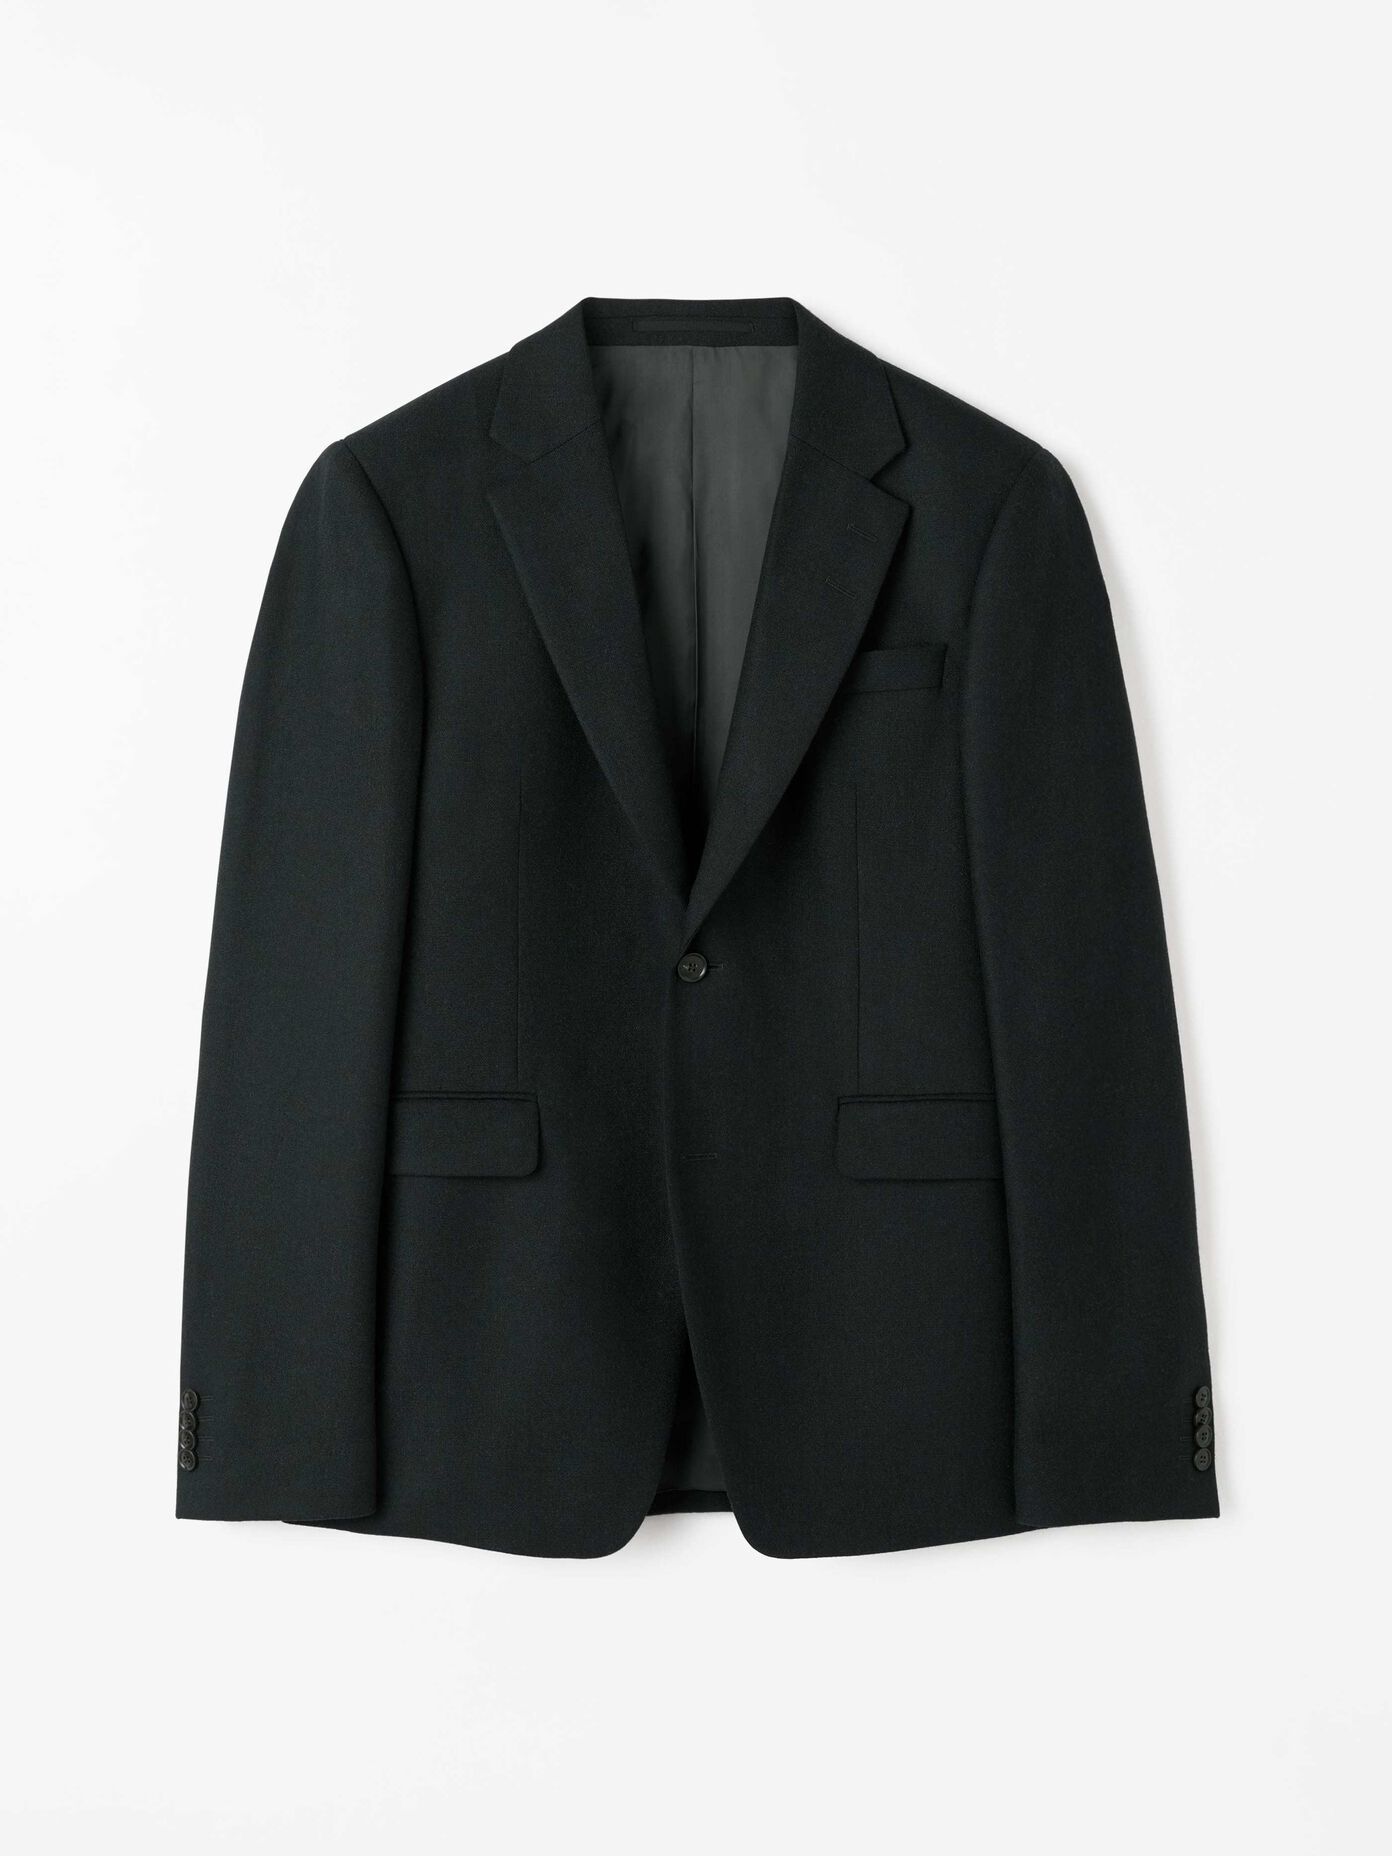 Suits - See all designer suits online at Tiger of Sweden